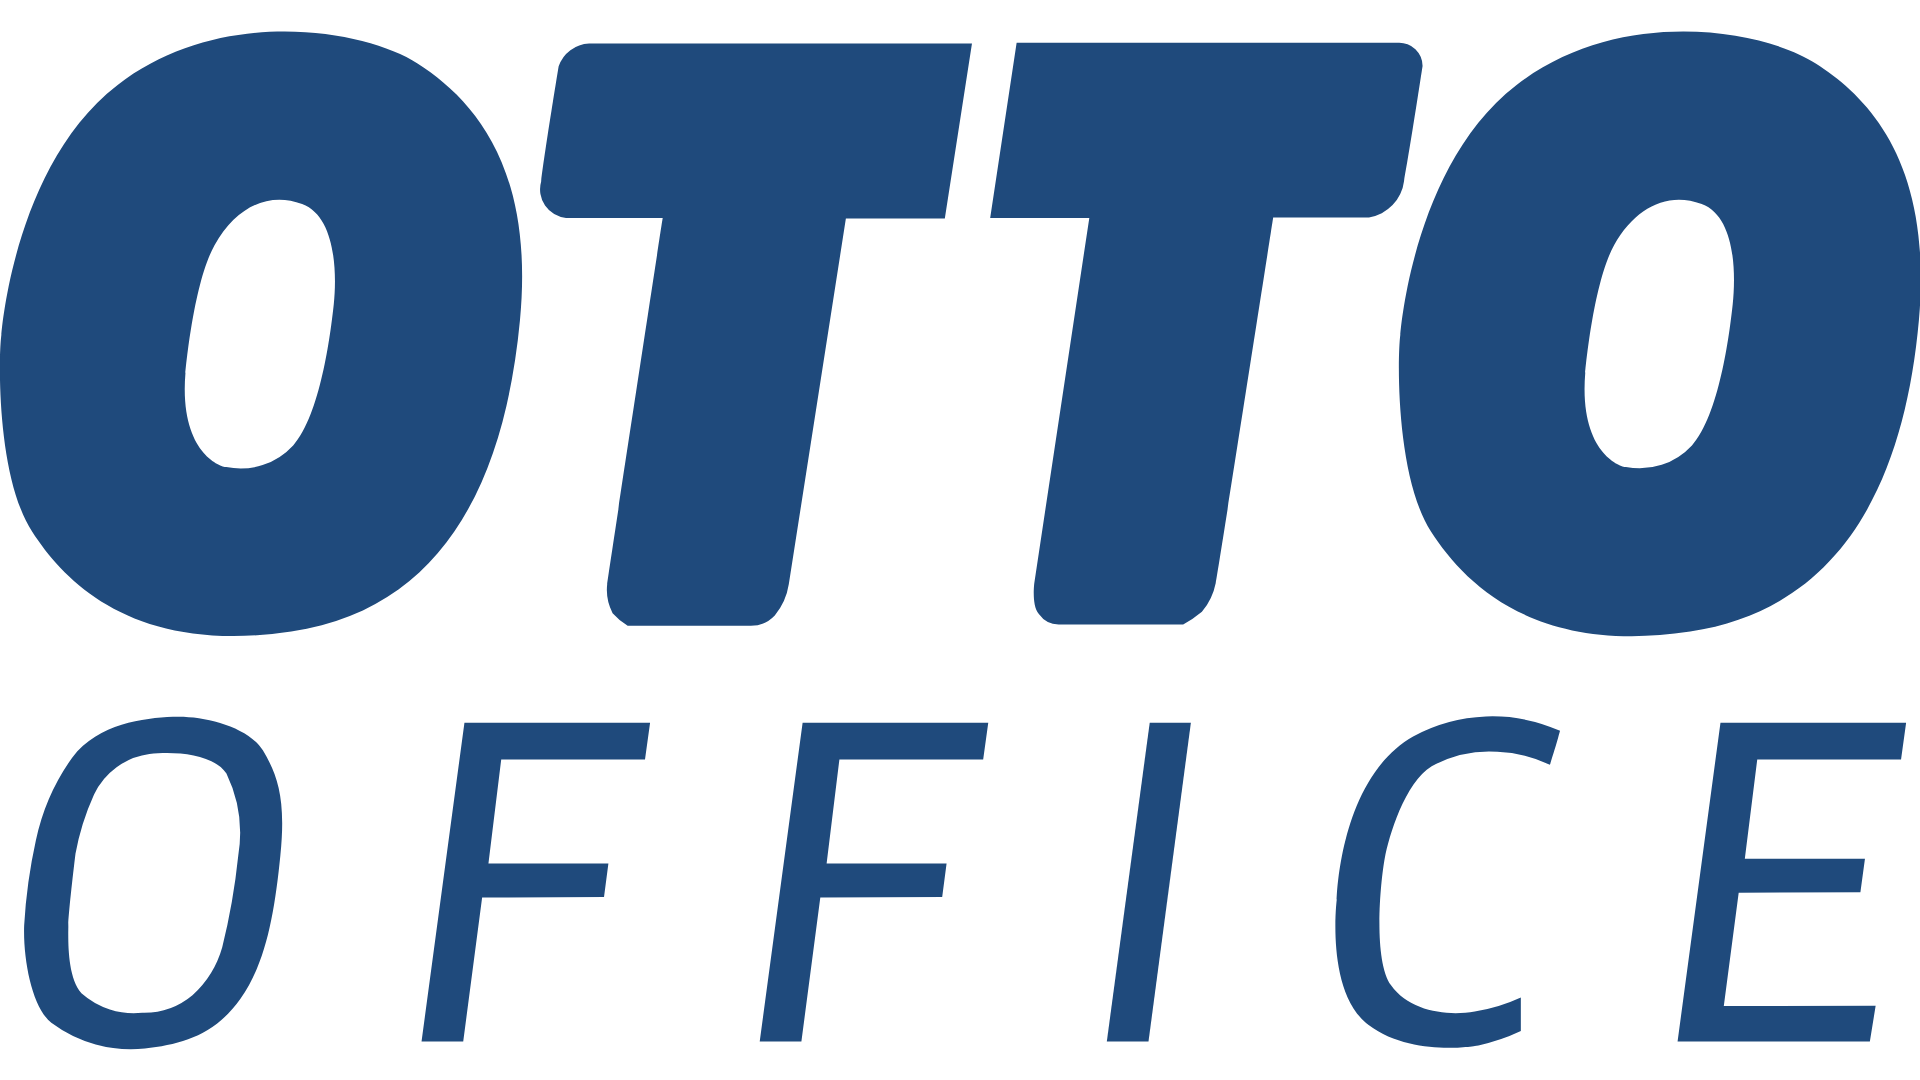 Otto Office Gutschein